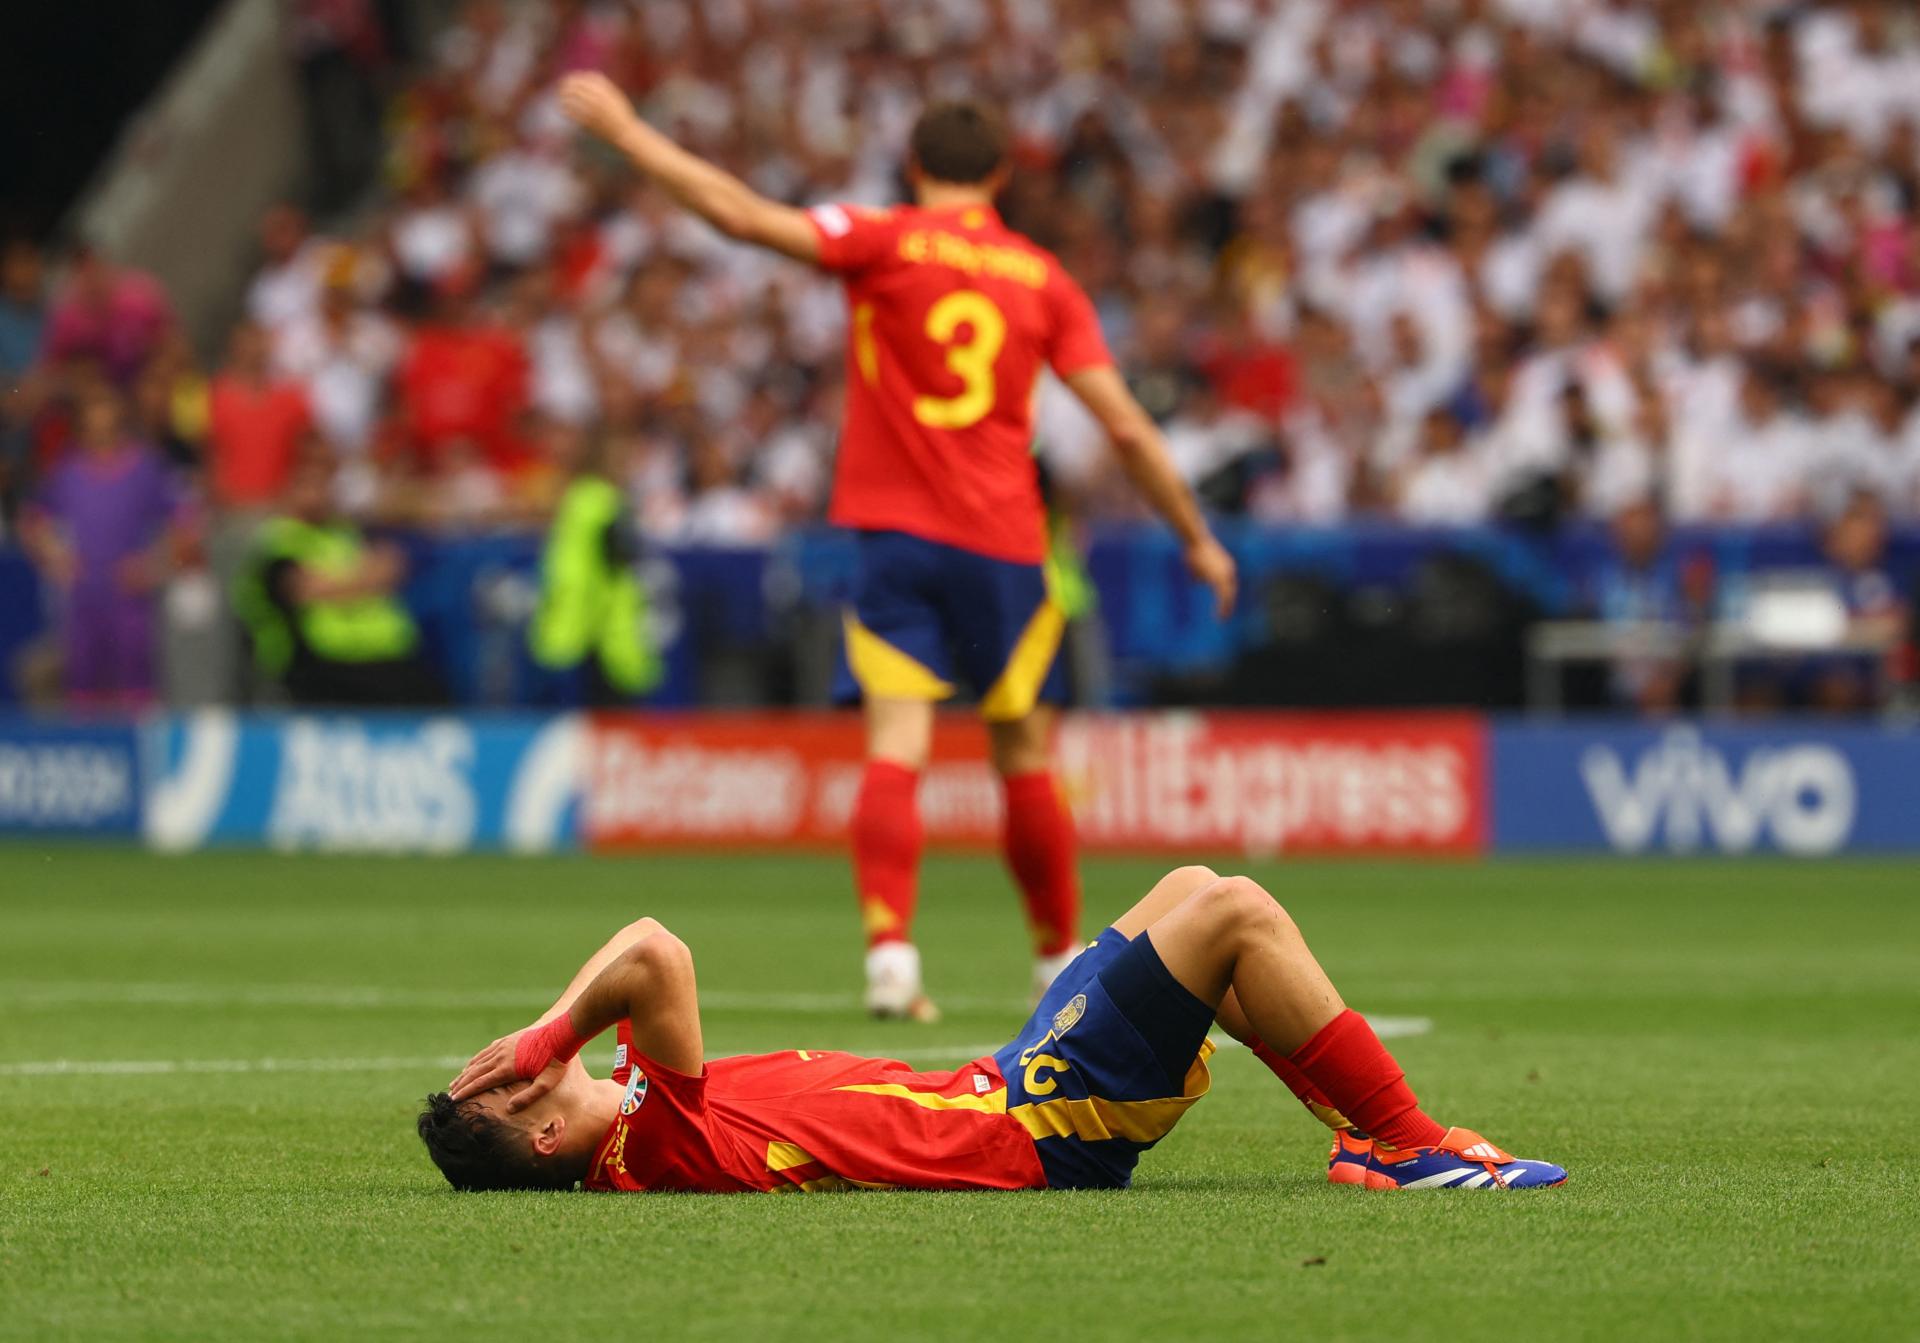 Španielsky futbalista Pedri na šampionáte dohral, má podvrtnuté koleno